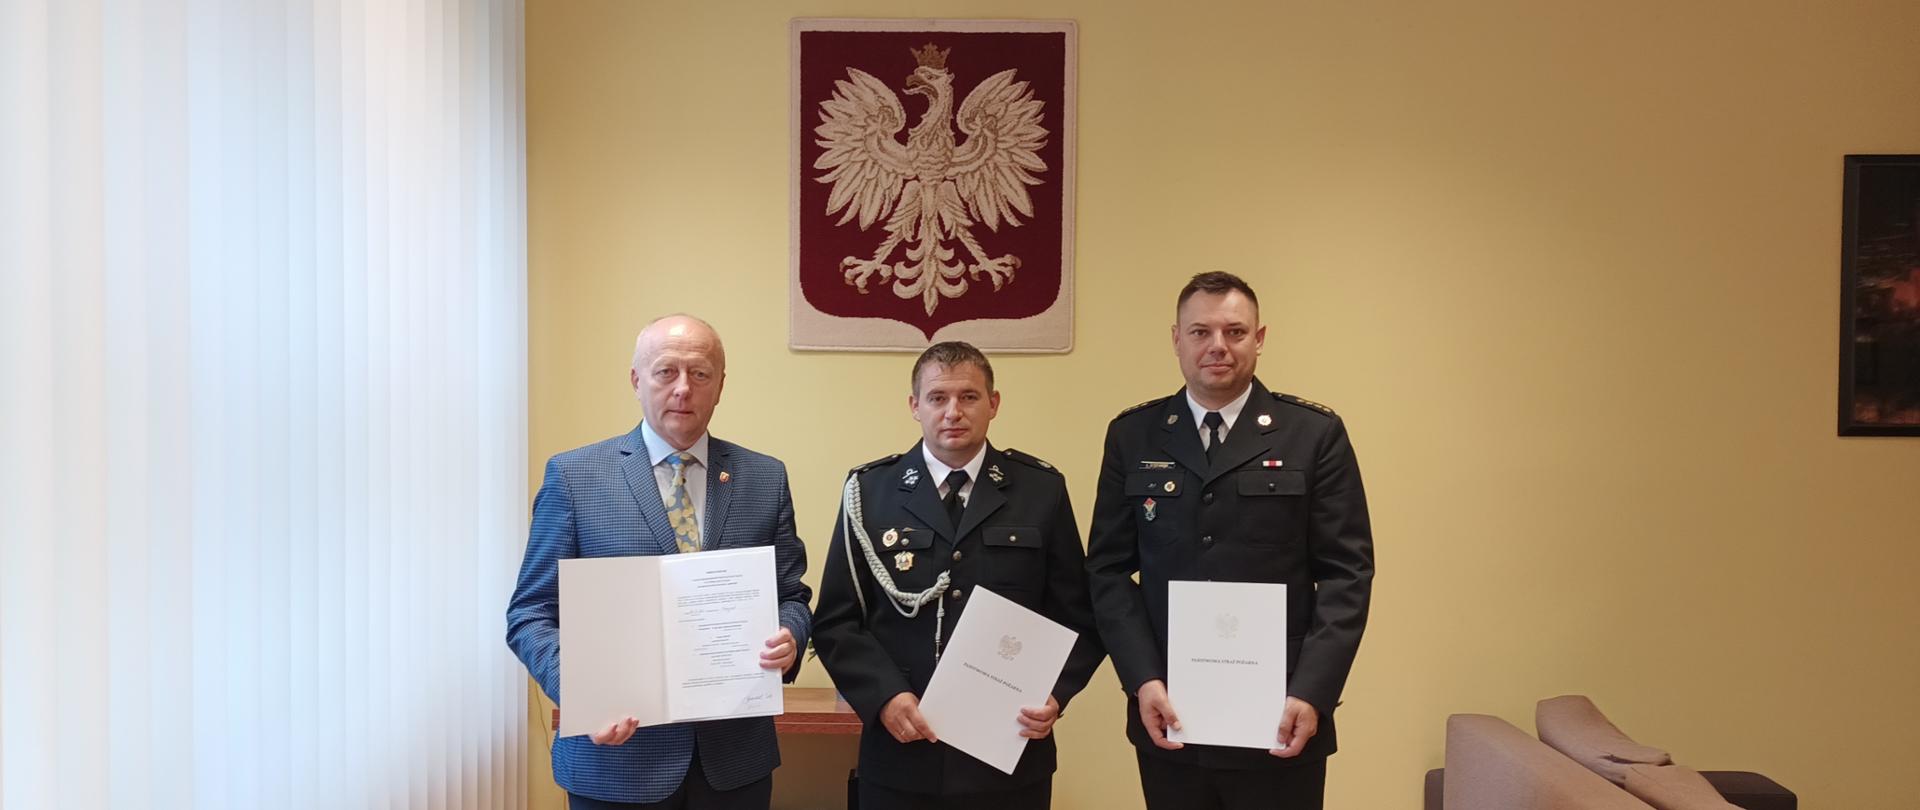 od lewej: Burmistrz Chociwla, Prezes OSP we wsi Długie, Komendant Powiatowy PSP w Stargardzie